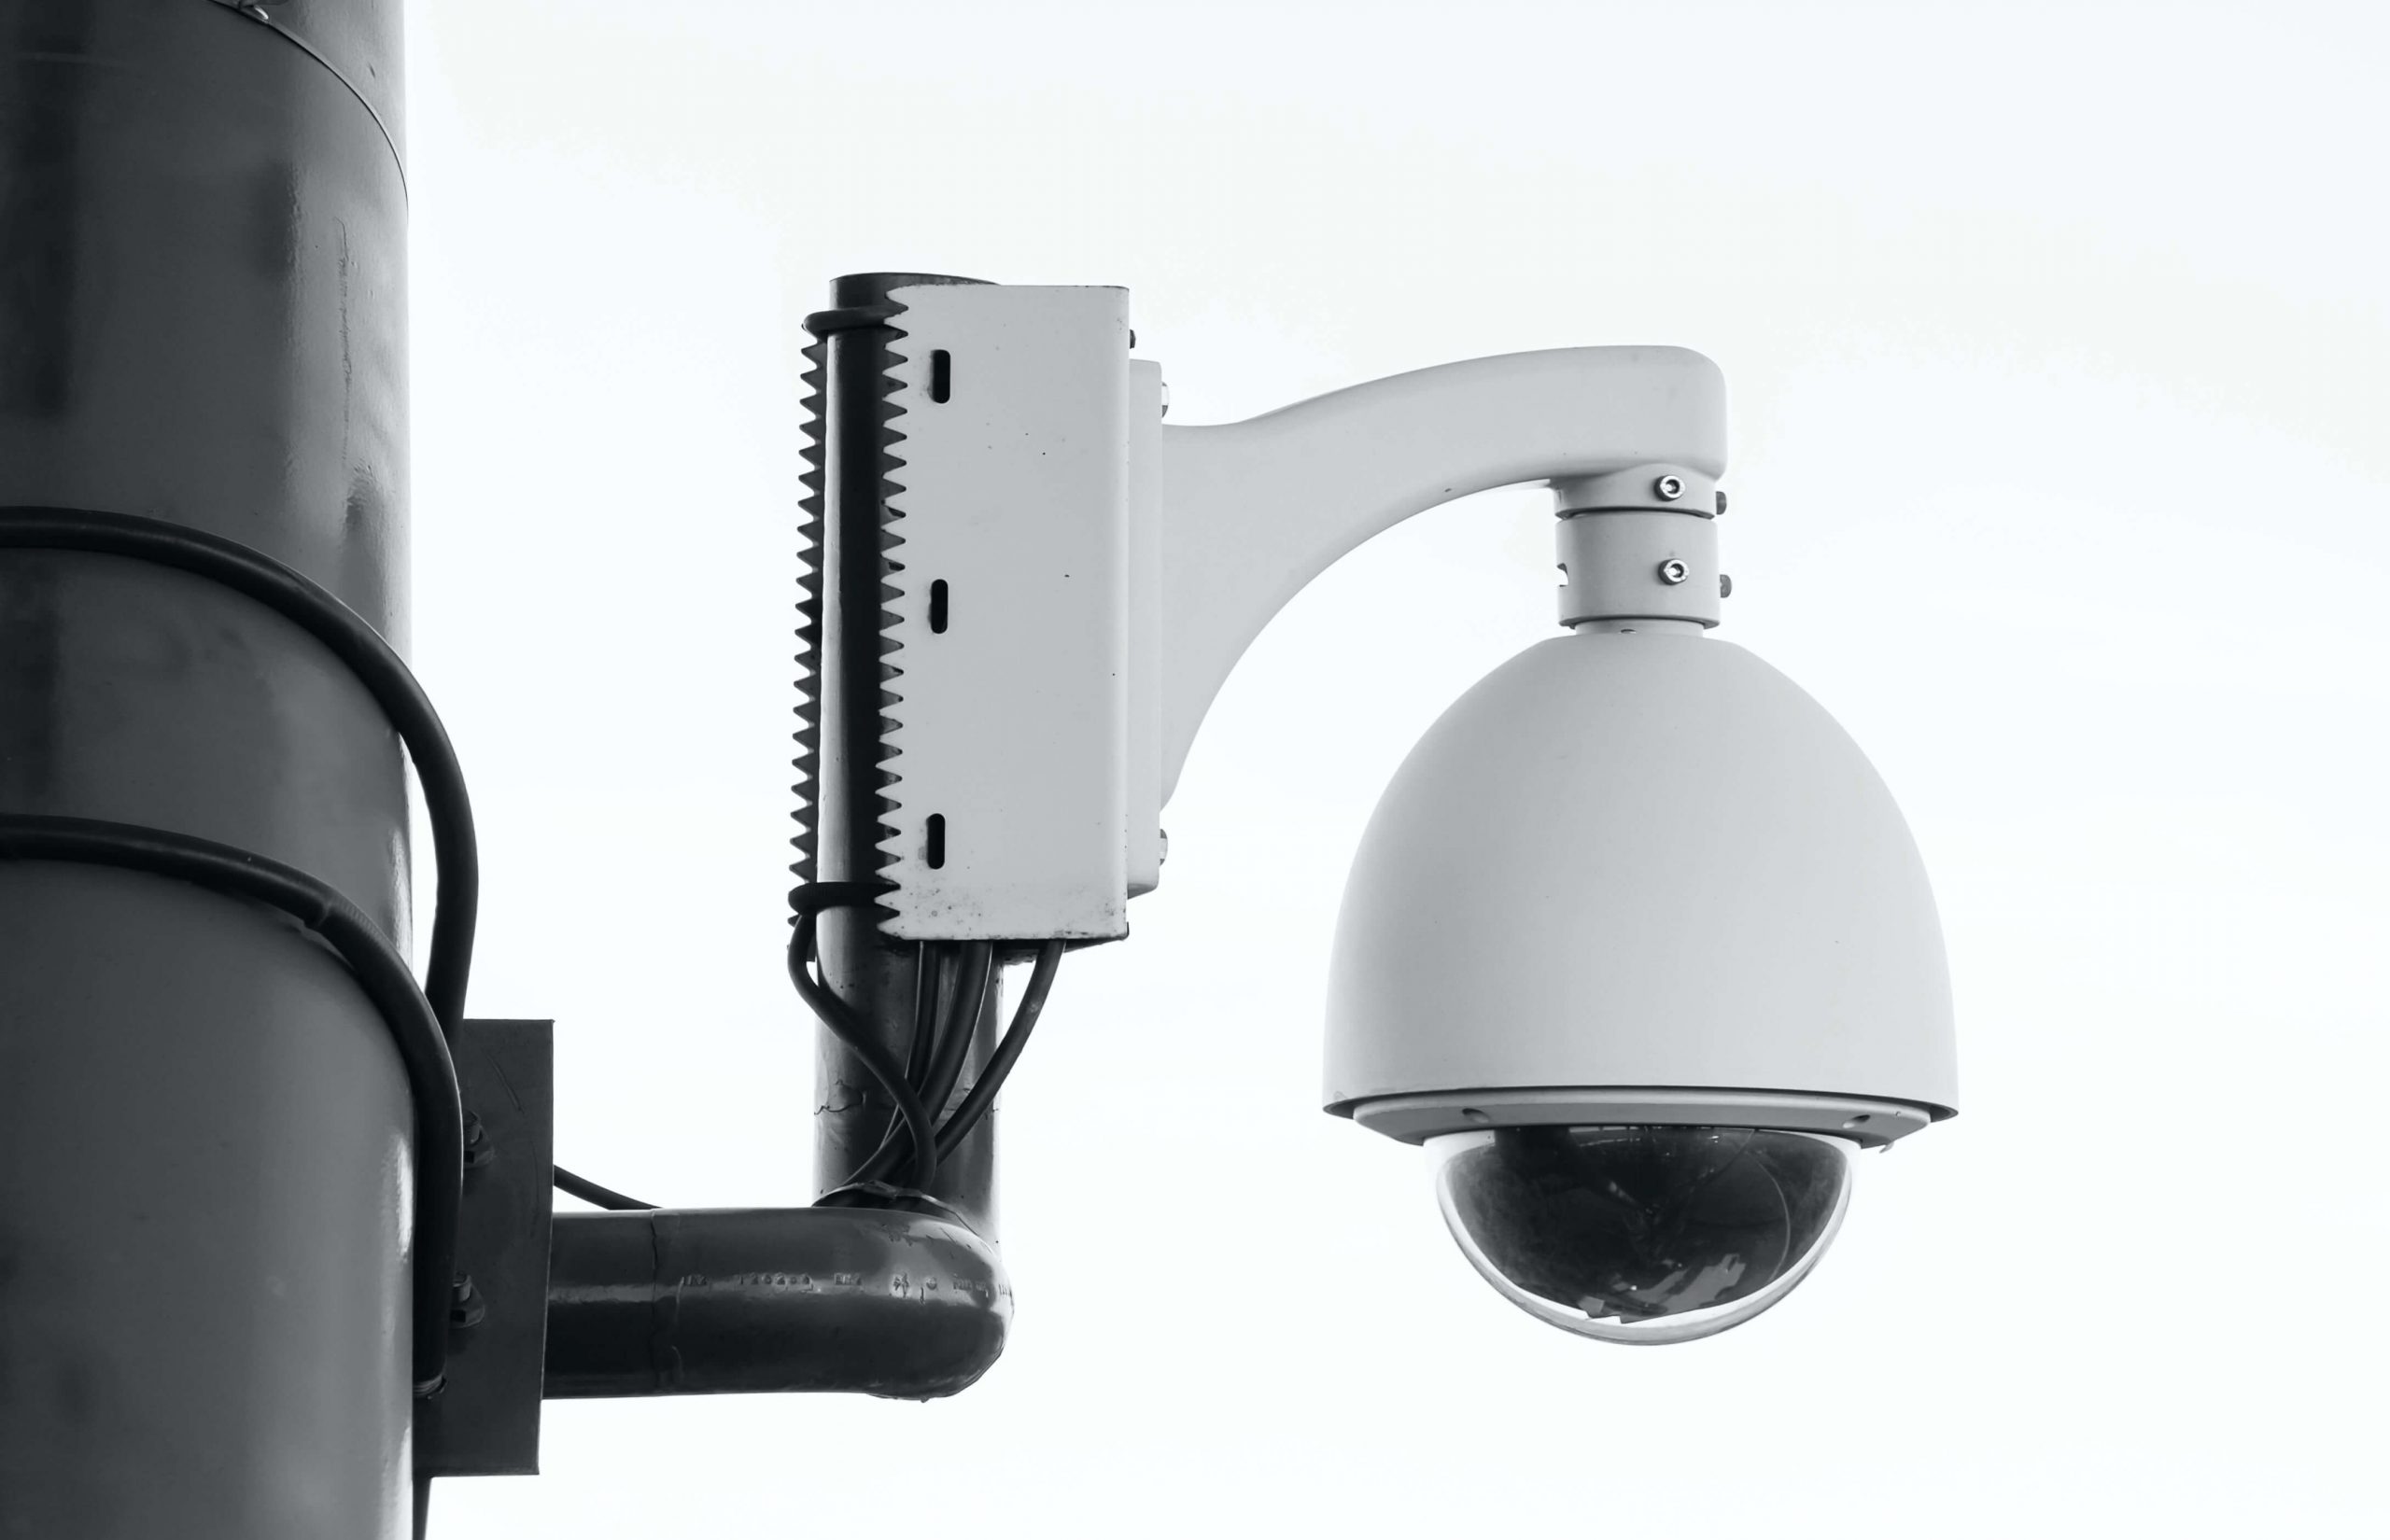 Συστήματα συναγερμών και κλειστά κυκλωματα παρακολούθησης & καταγραφής CCTV